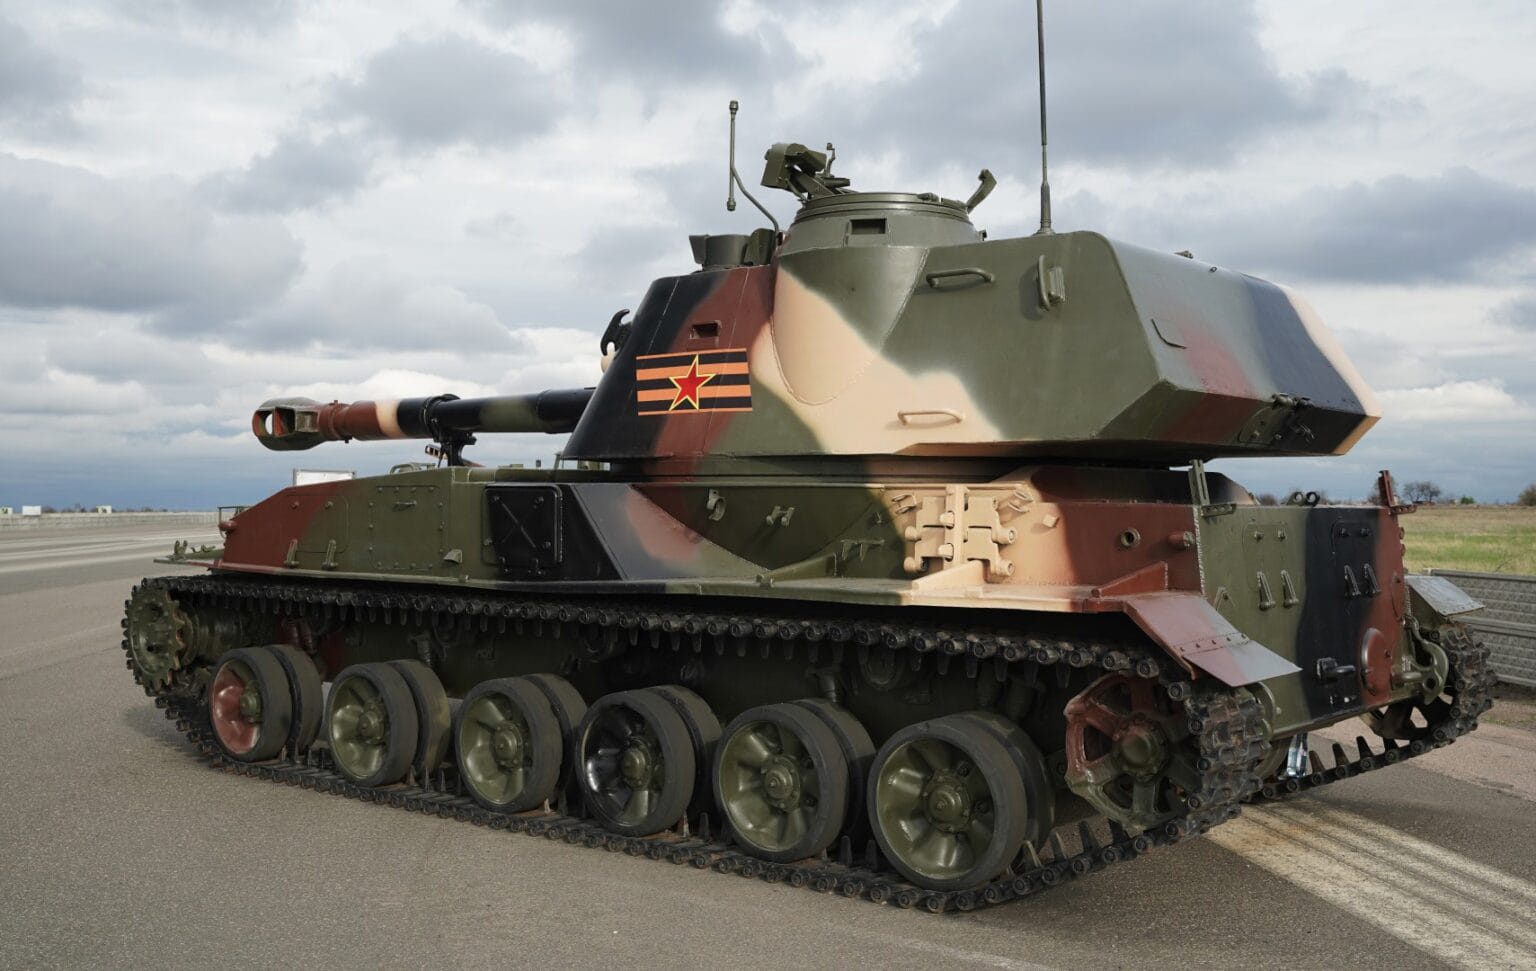 Militantes apoyados por Rusia envían más tanques a las posiciones de primera  línea del ejército ucraniano